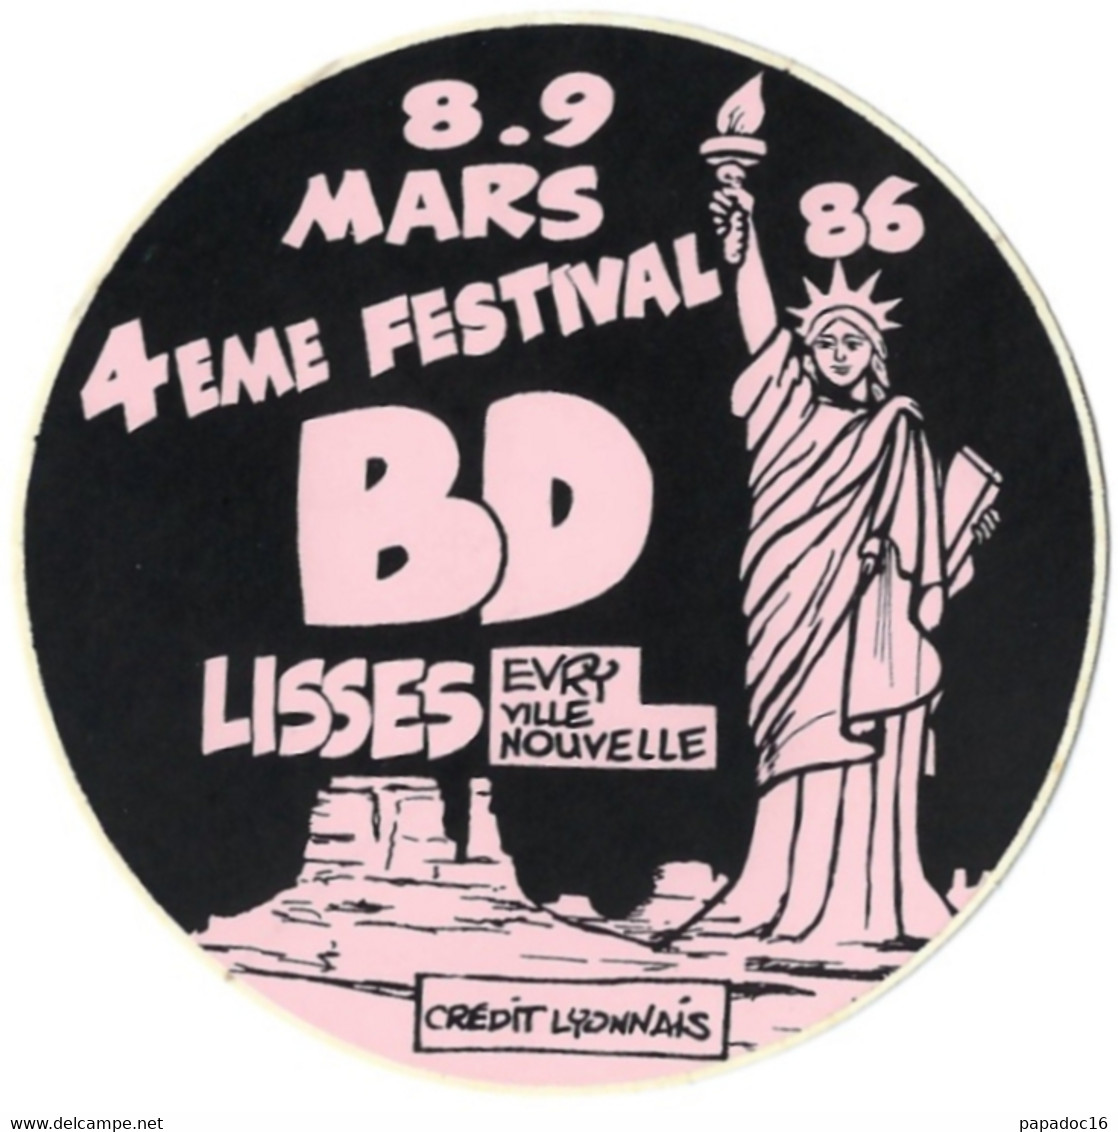 BD - Autocollant - 4eme Festival BD - Lisses - Evry Ville Nouvelle - 8-9 Mars 1986 [Crédit Lyonnais] - Autocollants